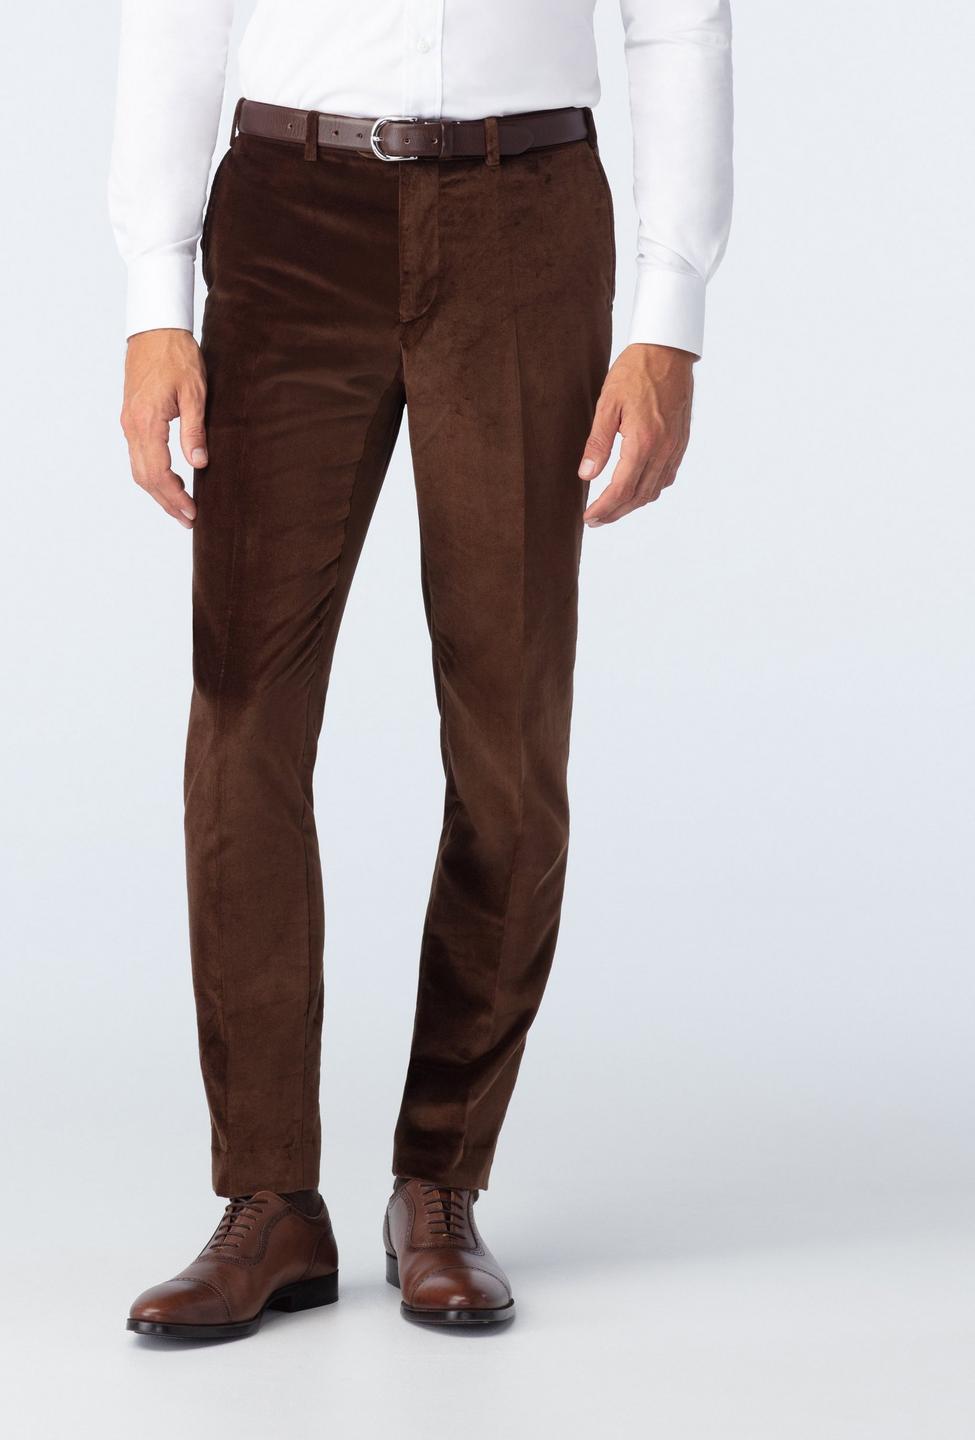 Harford Velvet Brown Pants